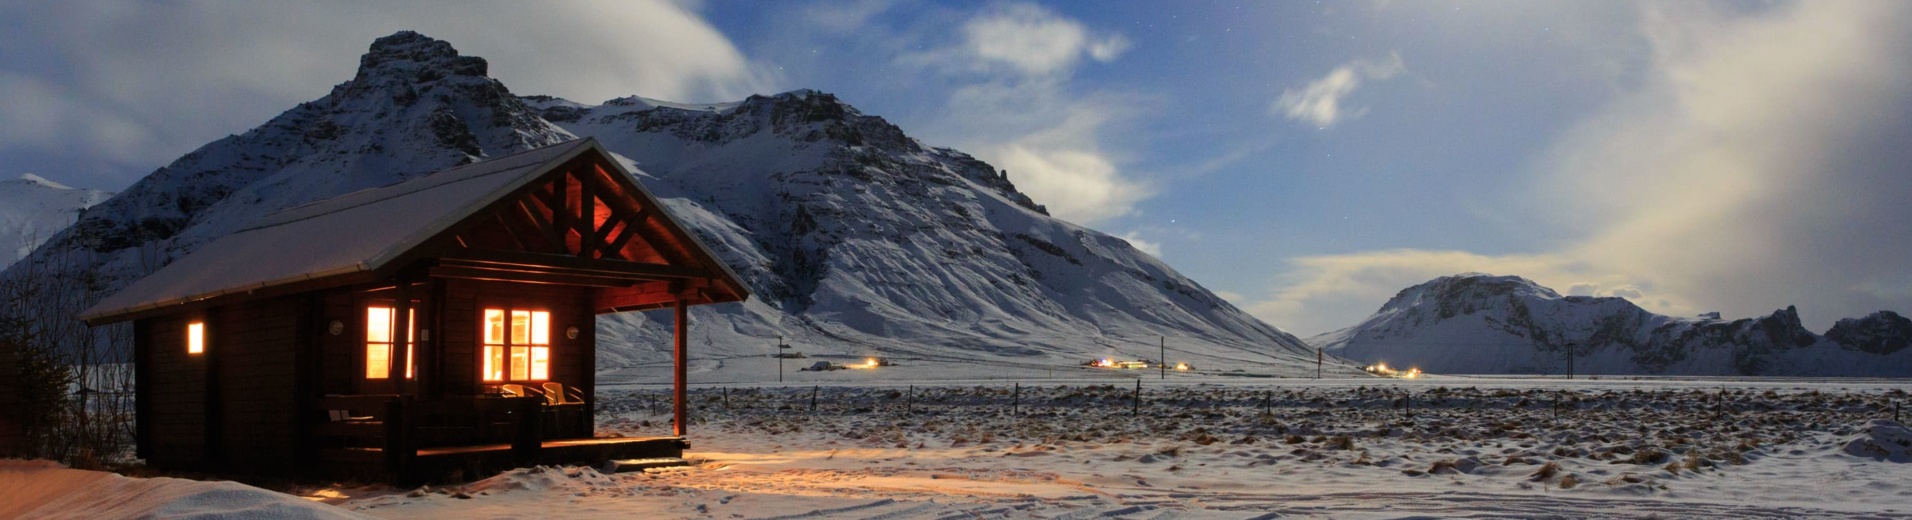 Chalet hiver Islande